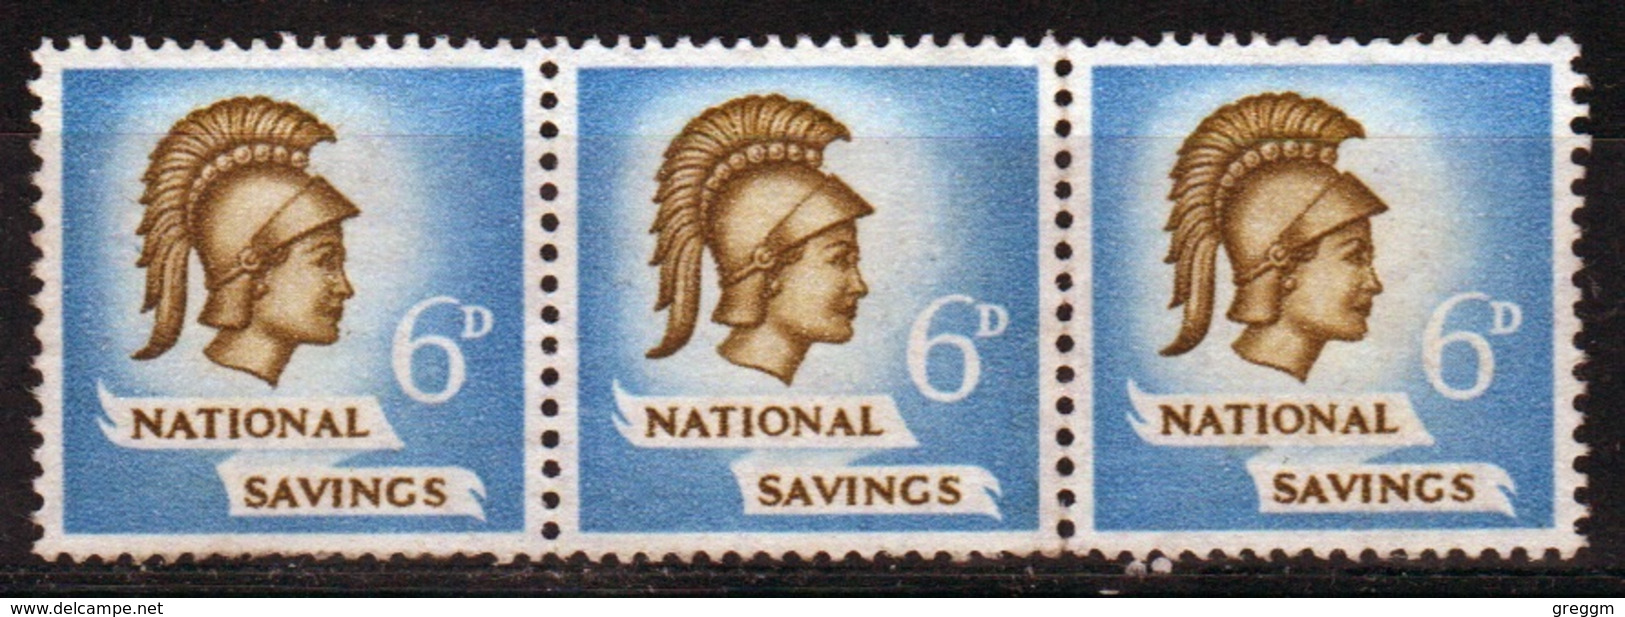 GB 1951- 6d National Savings Cinderella Stamp In Strip Of 3. - Cinderellas